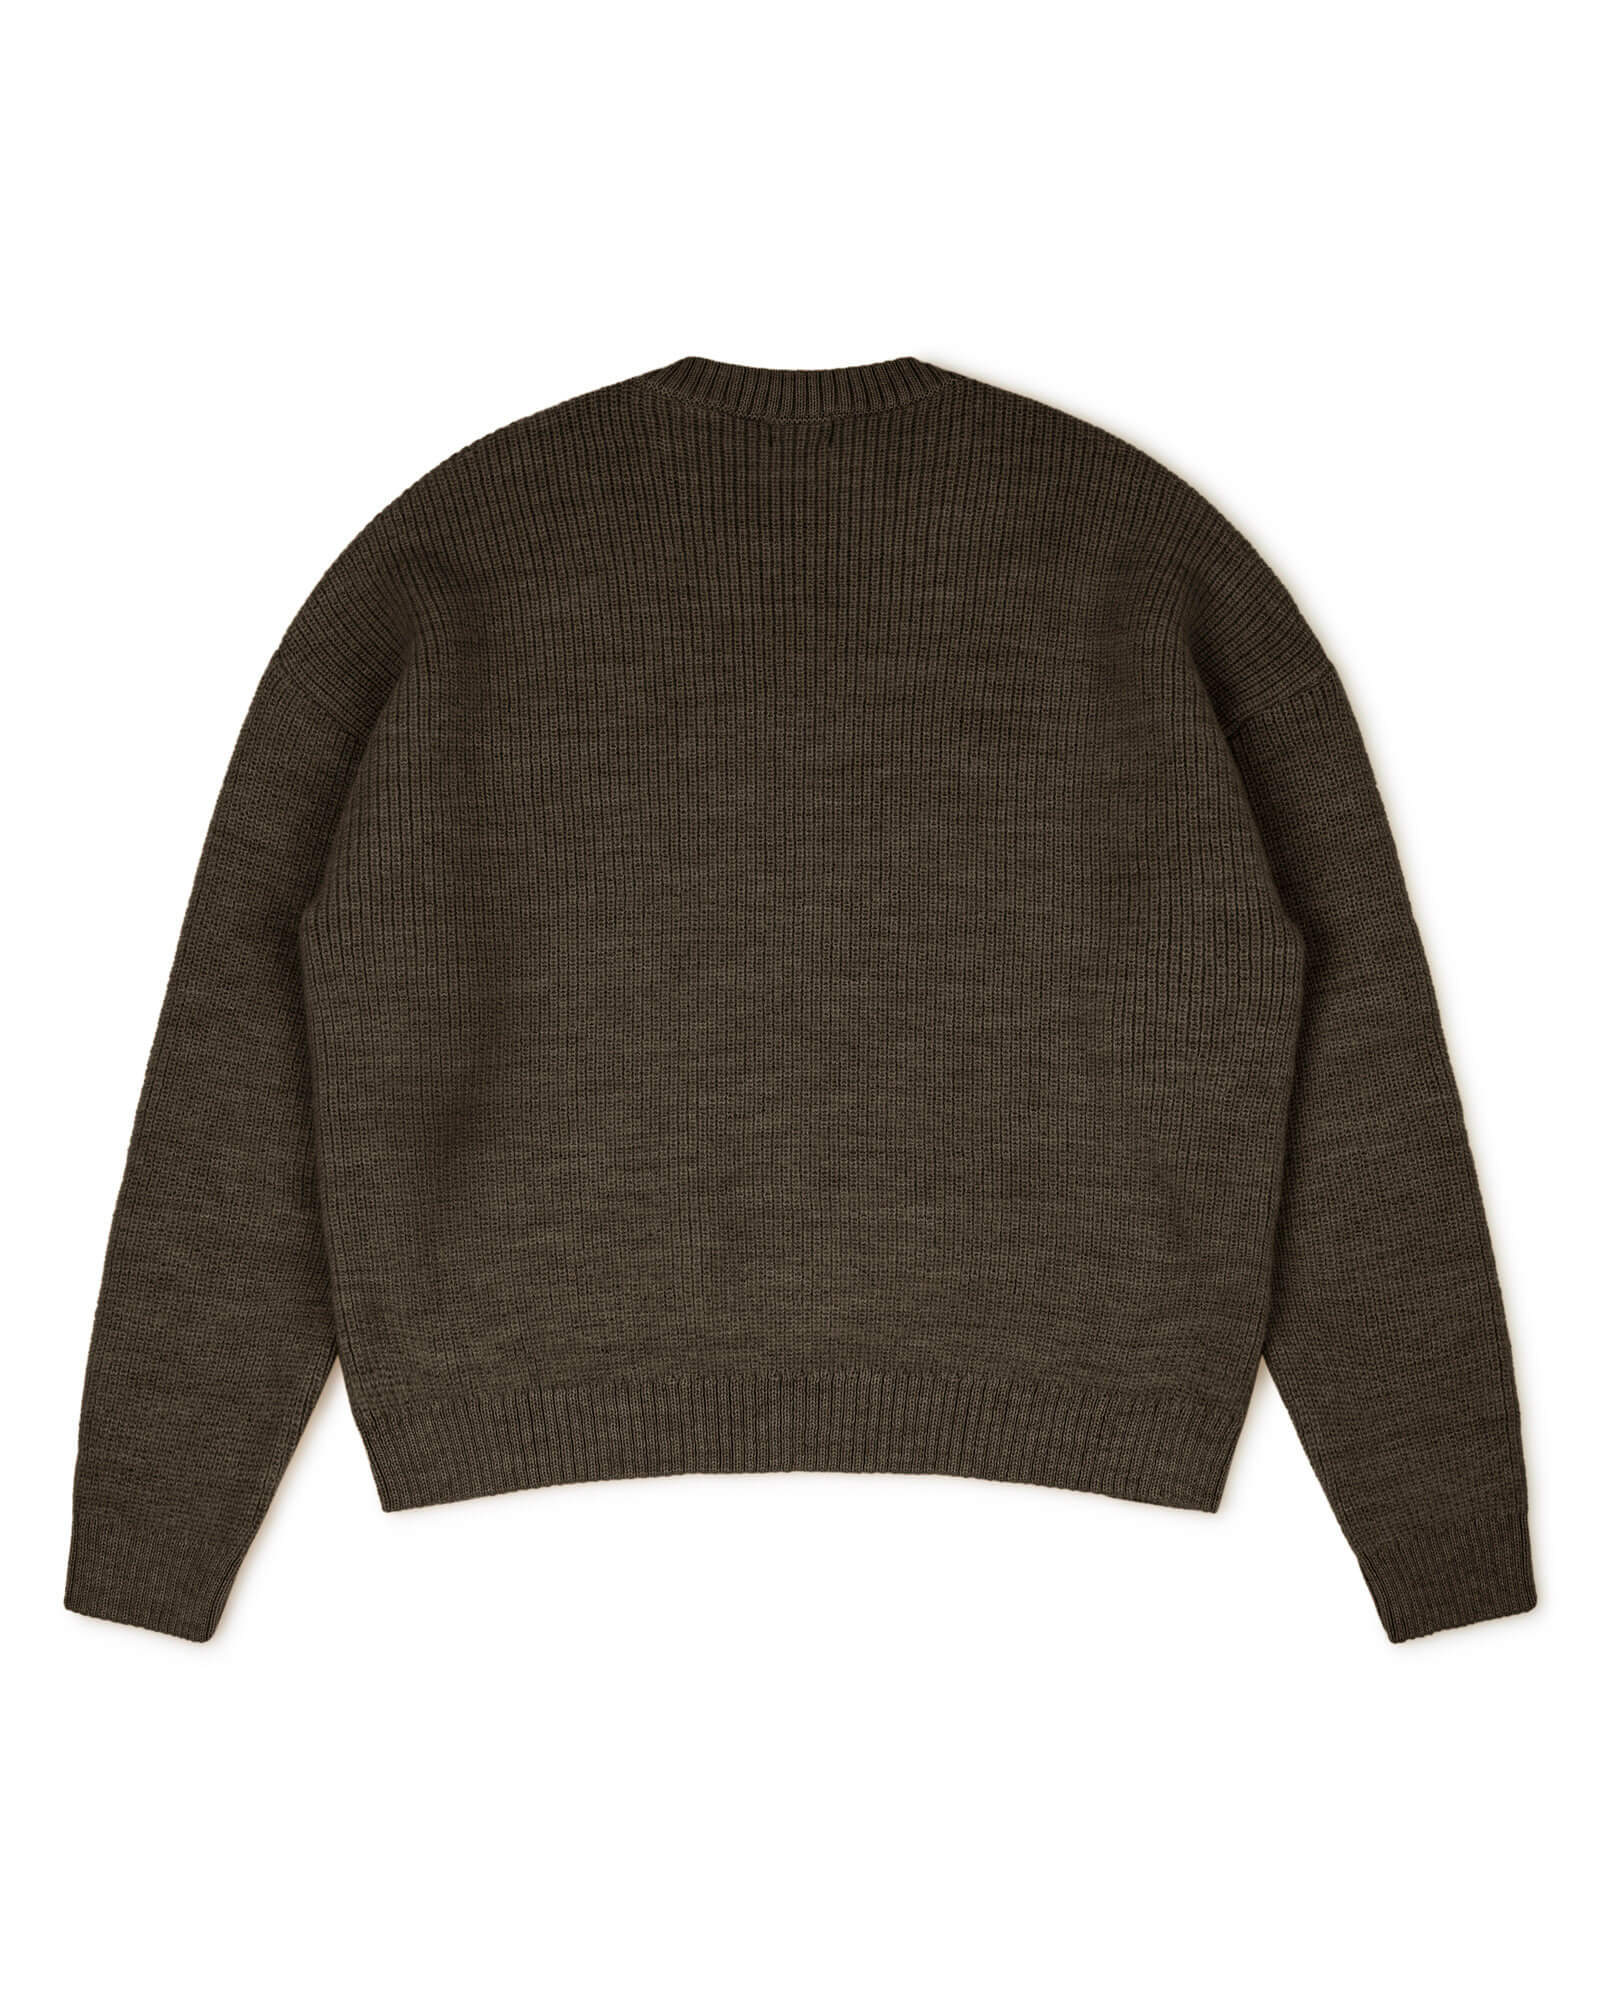 Brown sweater vulcano made of merino and alpaca yarn from Matona